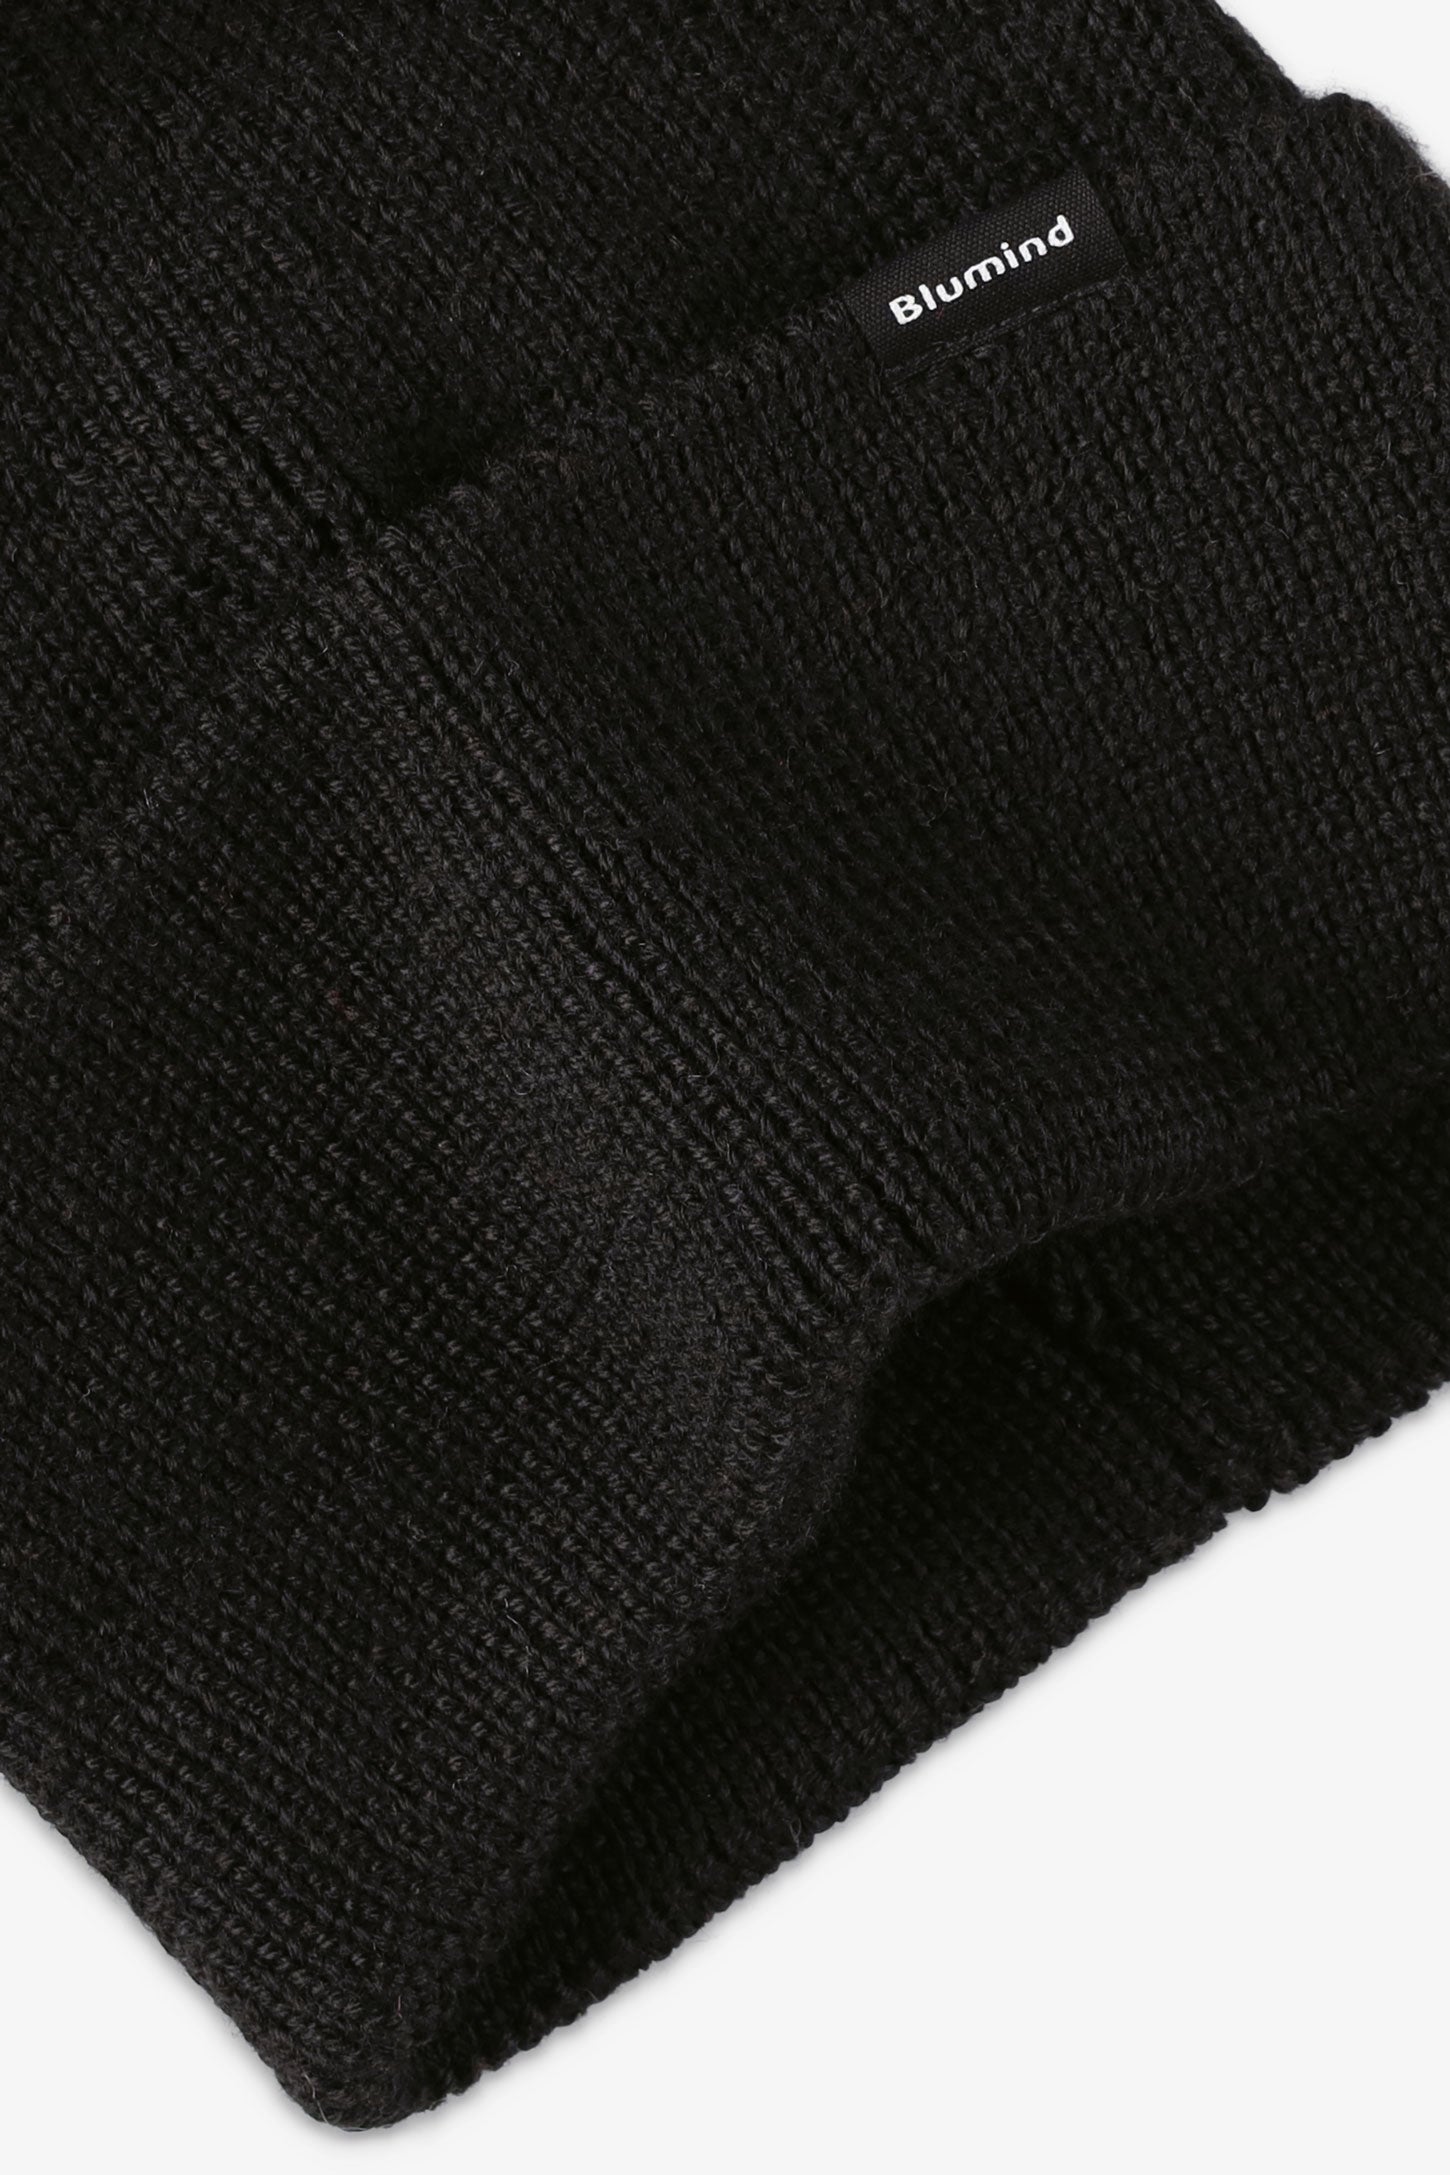 Tuque en tricot doublée polyester recyclé - Ado fille && NOIR